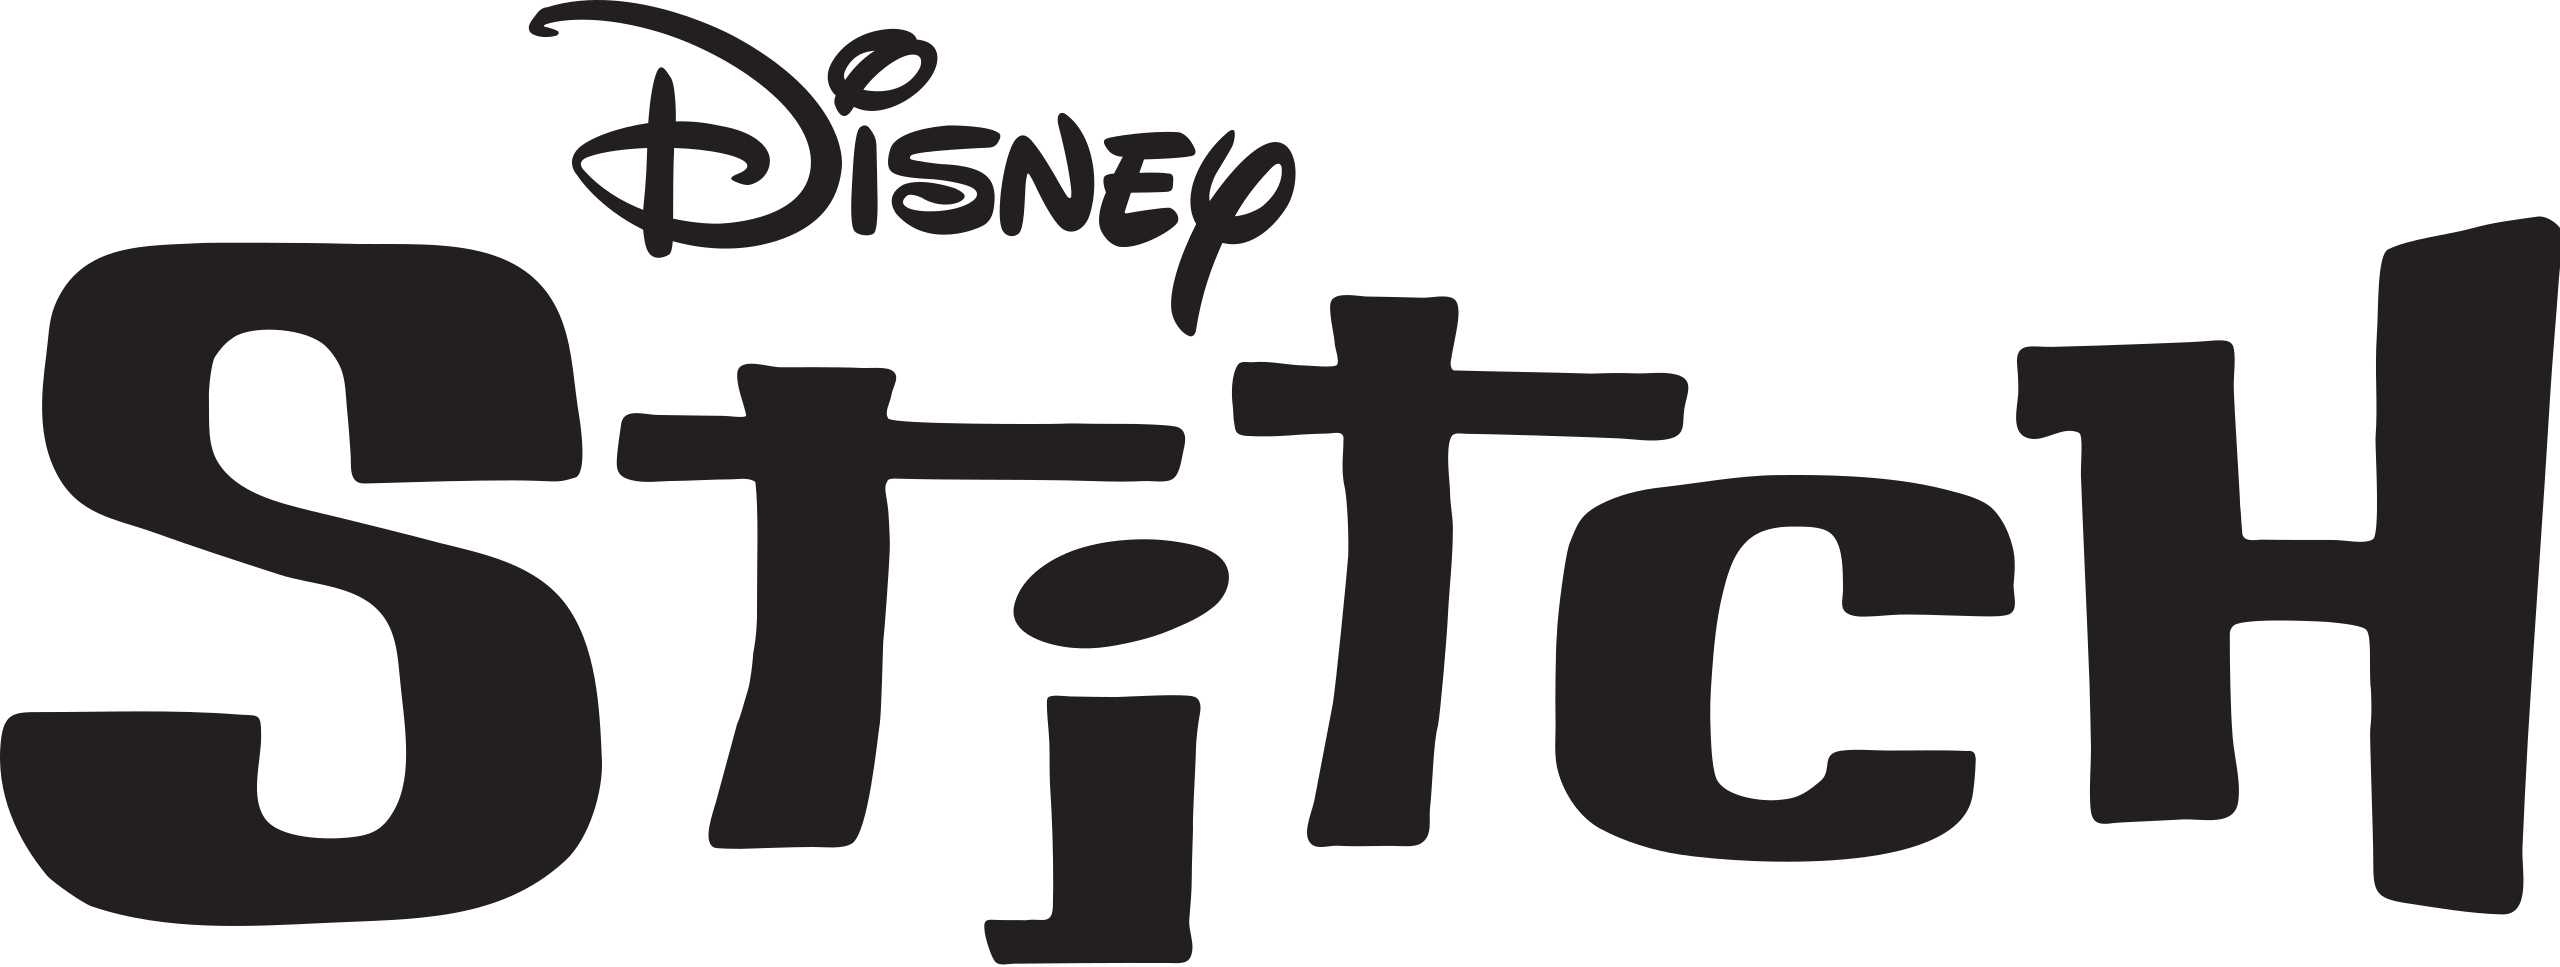 disney-stitch-logo